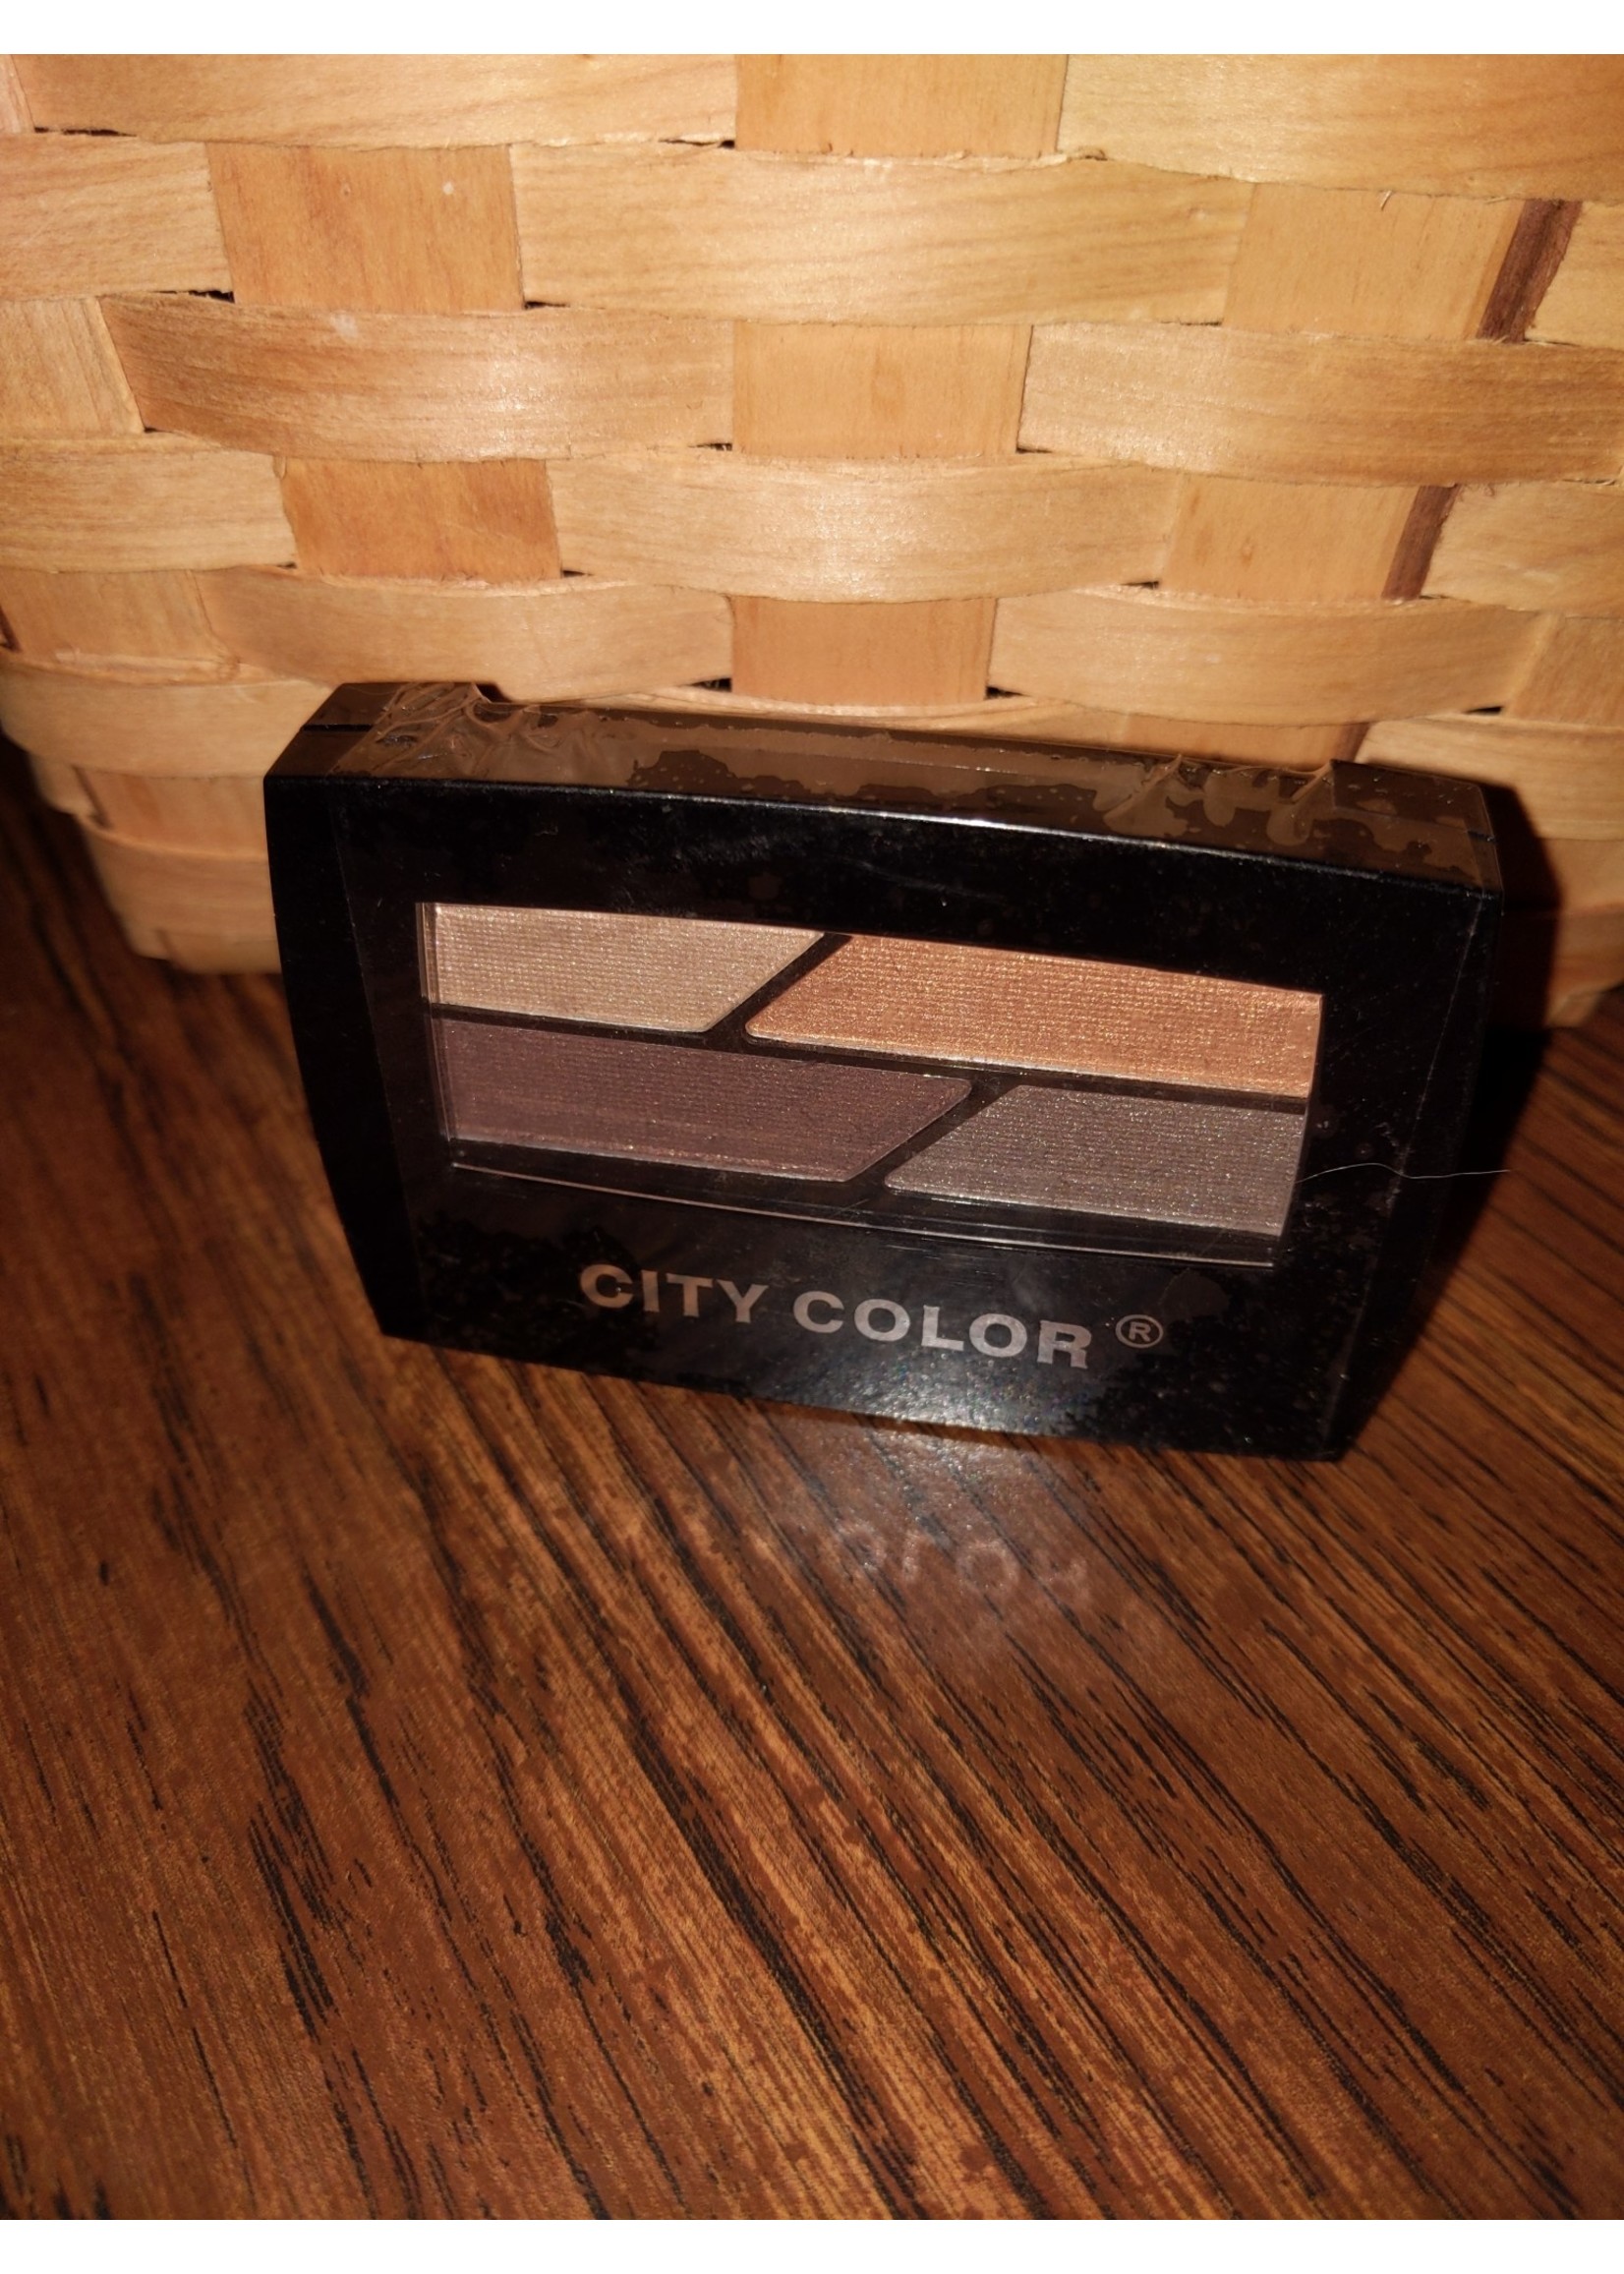 City Color City Color Quad Eyeshadow Brown Makeup palette